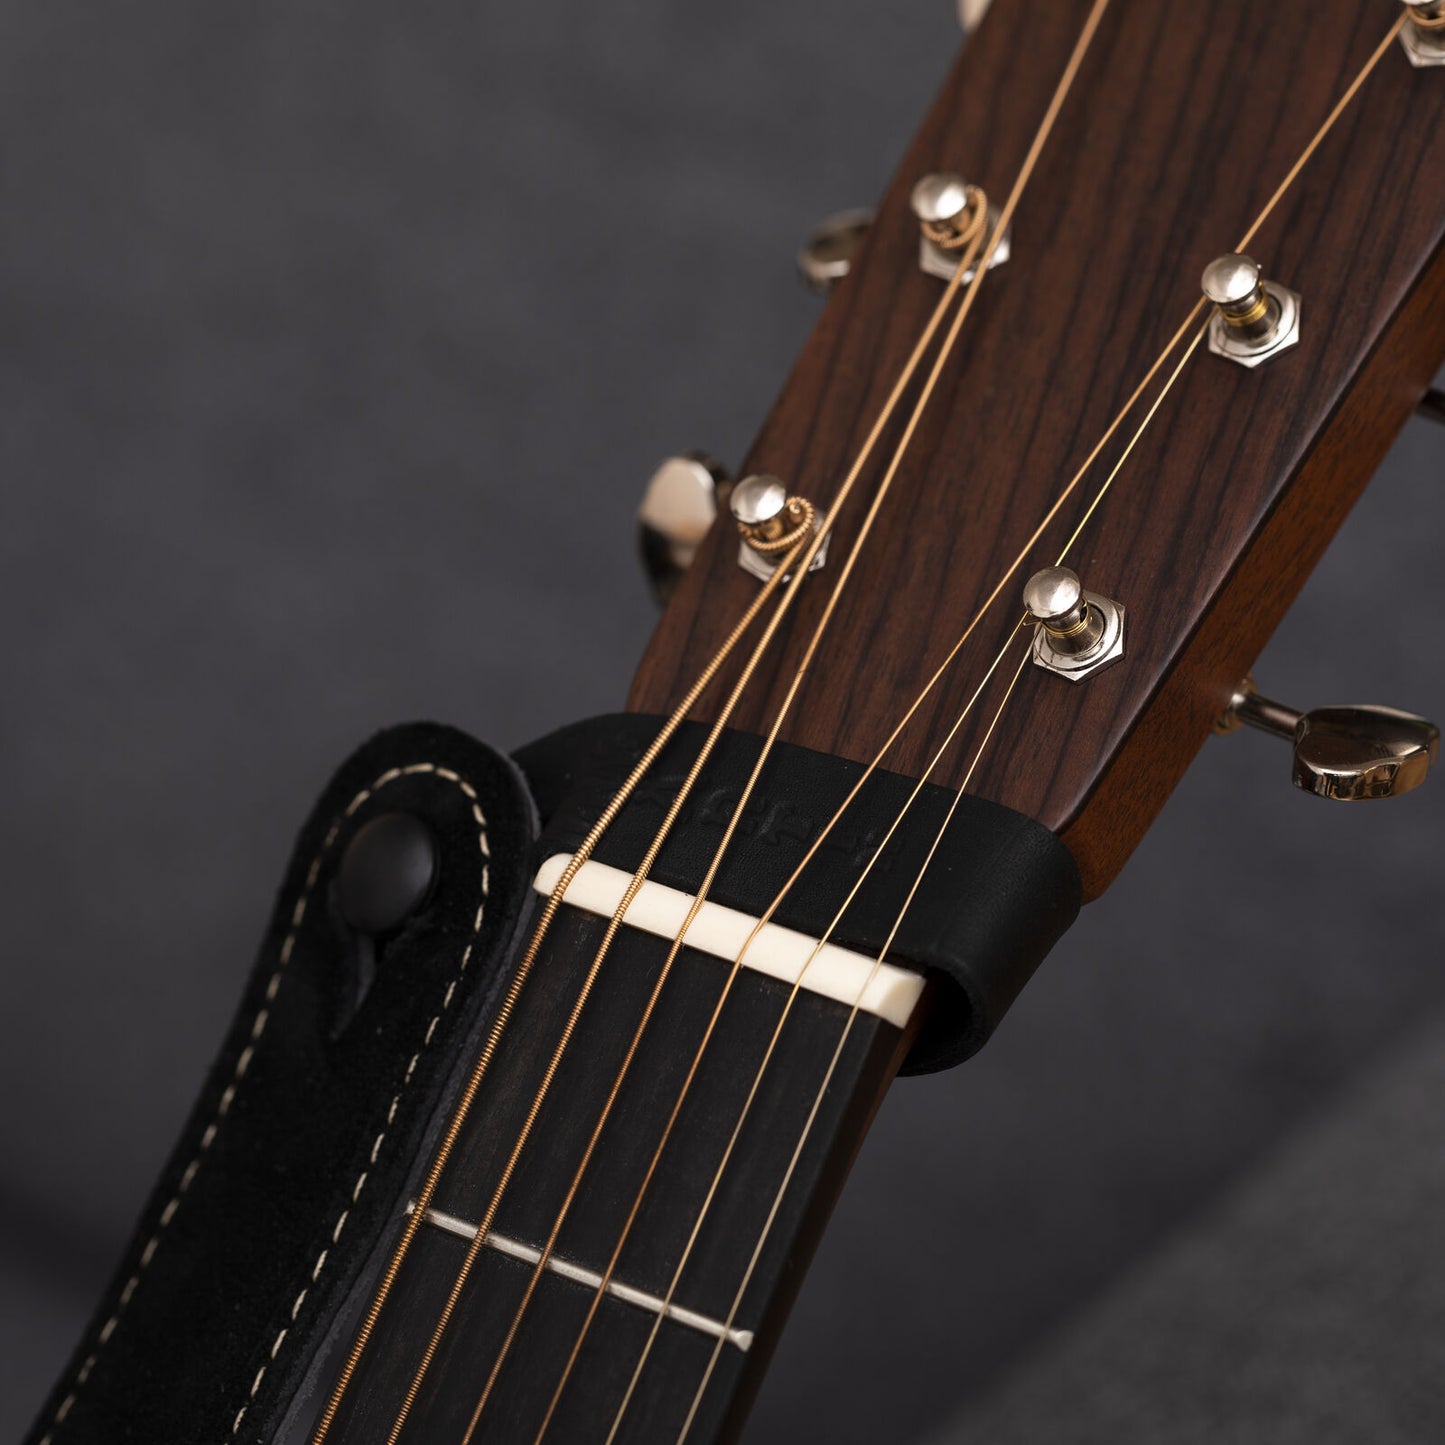 Martin Acoustic Guitar Strap Hook - Black